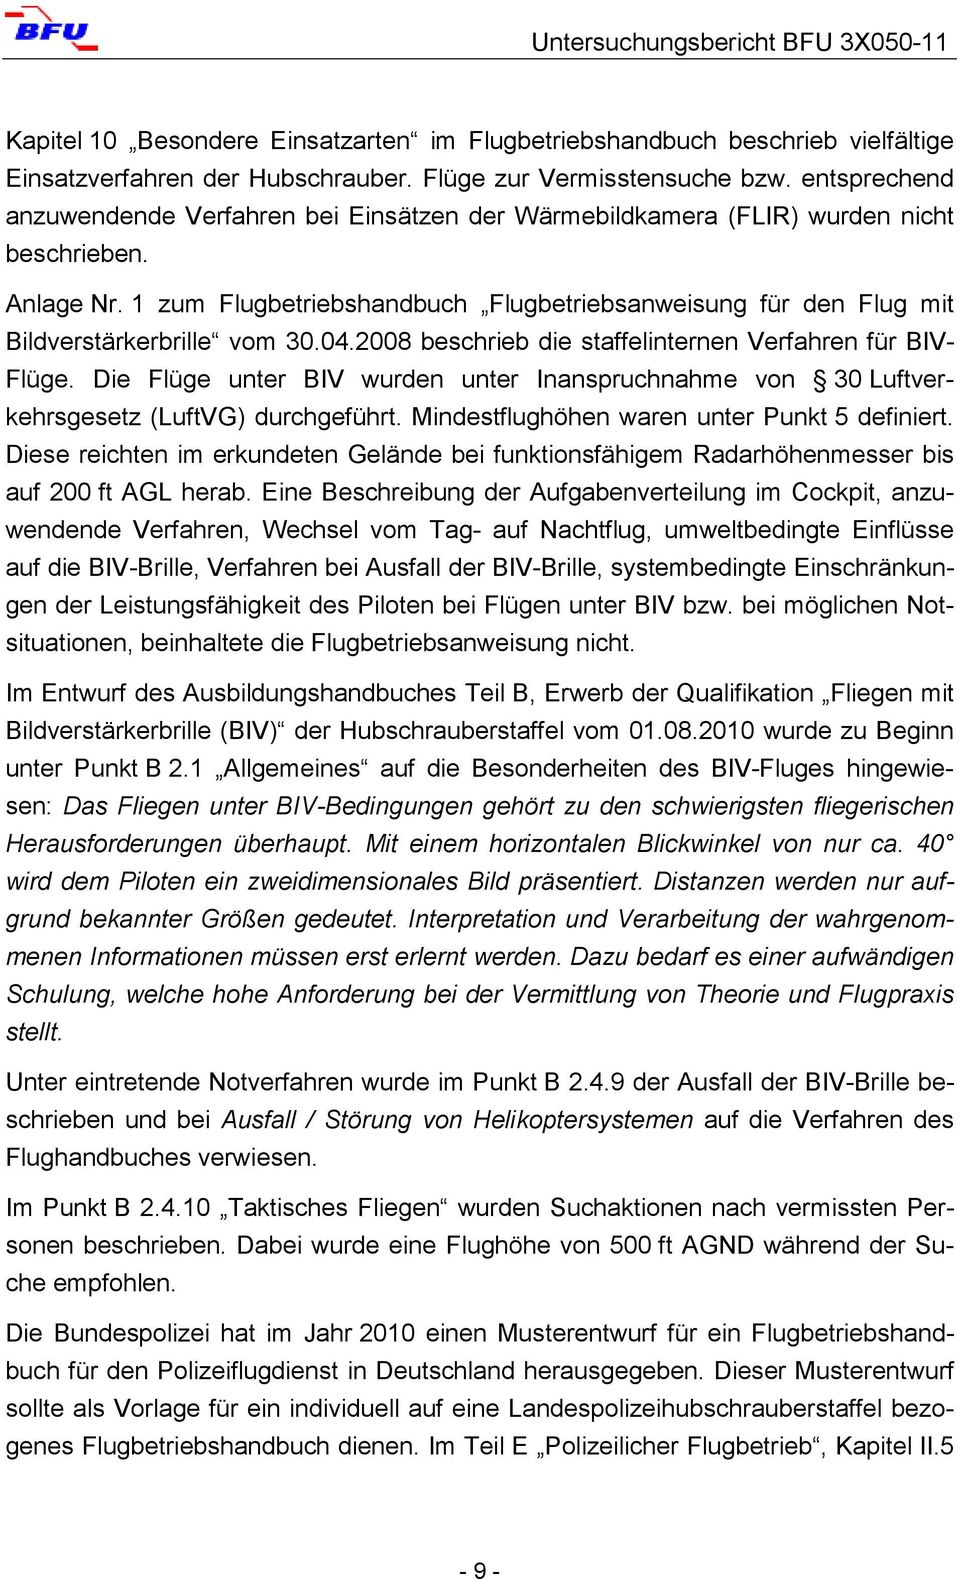 1 zum Flugbetriebshandbuch Flugbetriebsanweisung für den Flug mit Bildverstärkerbrille vom 30.04.2008 beschrieb die staffelinternen Verfahren für BIV- Flüge.